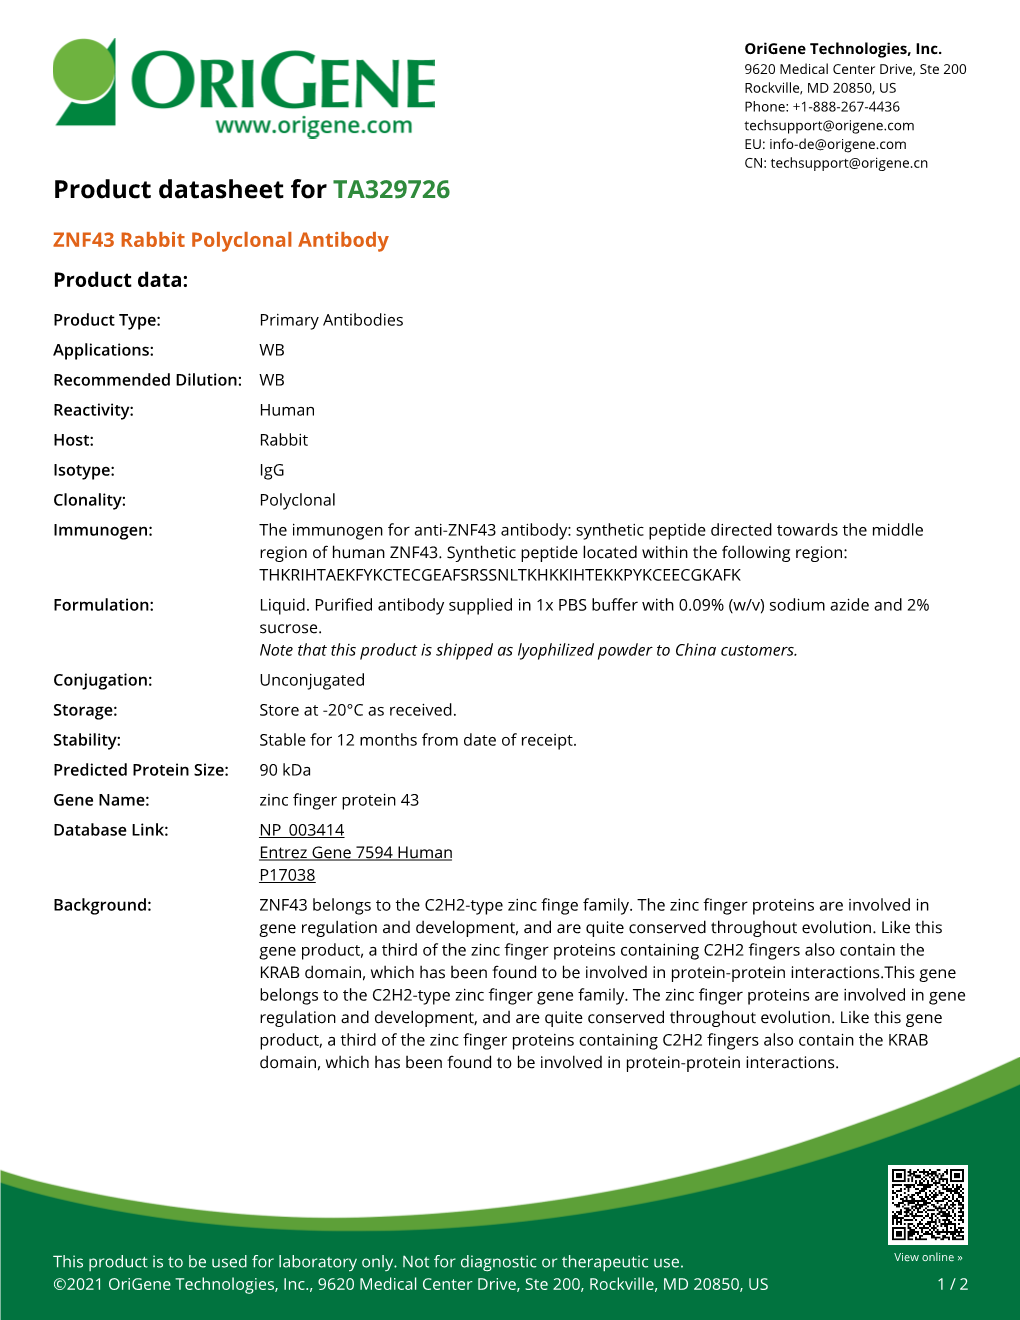 ZNF43 Rabbit Polyclonal Antibody – TA329726 | Origene